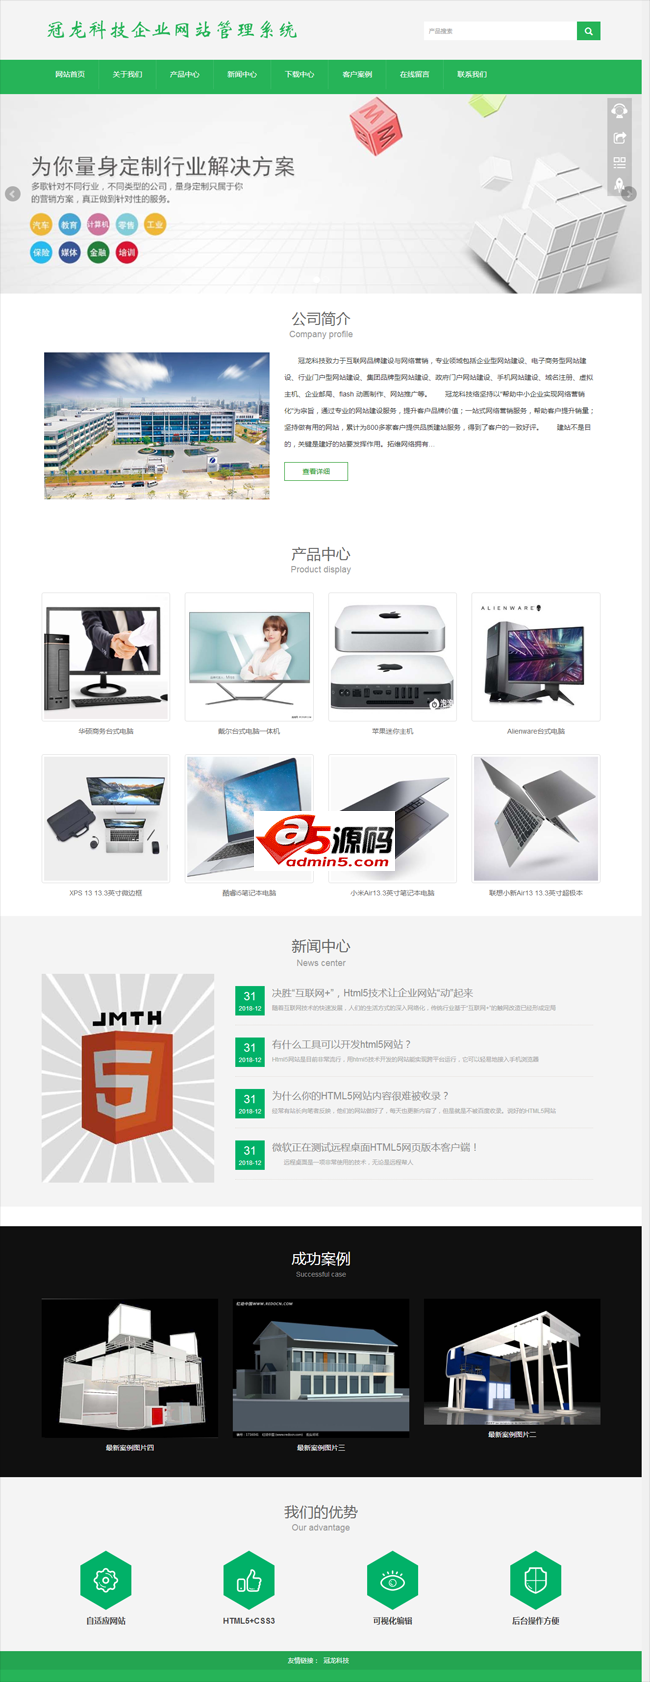 冠龙科技企业网站管理系统